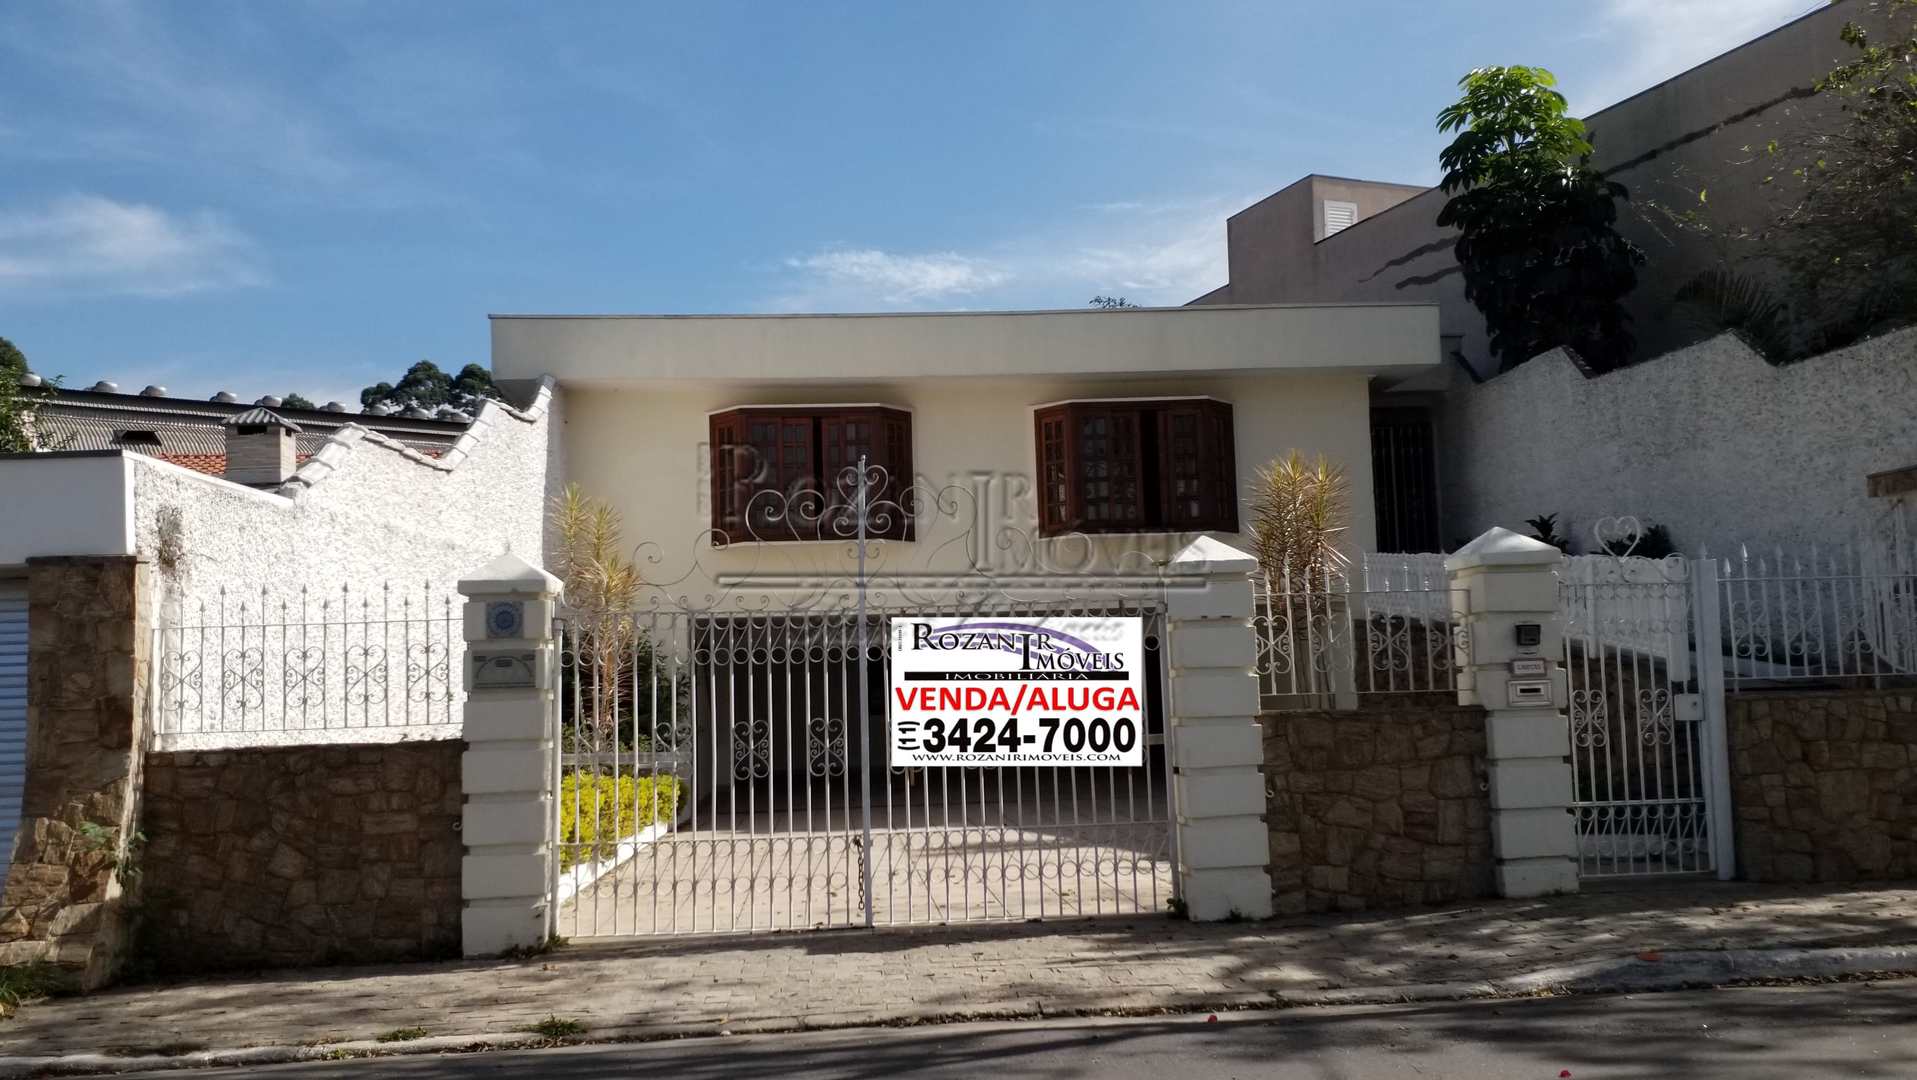 Imóveis Dos Casa, São Bernardo do Campo, SP à Venda ou Aluguel